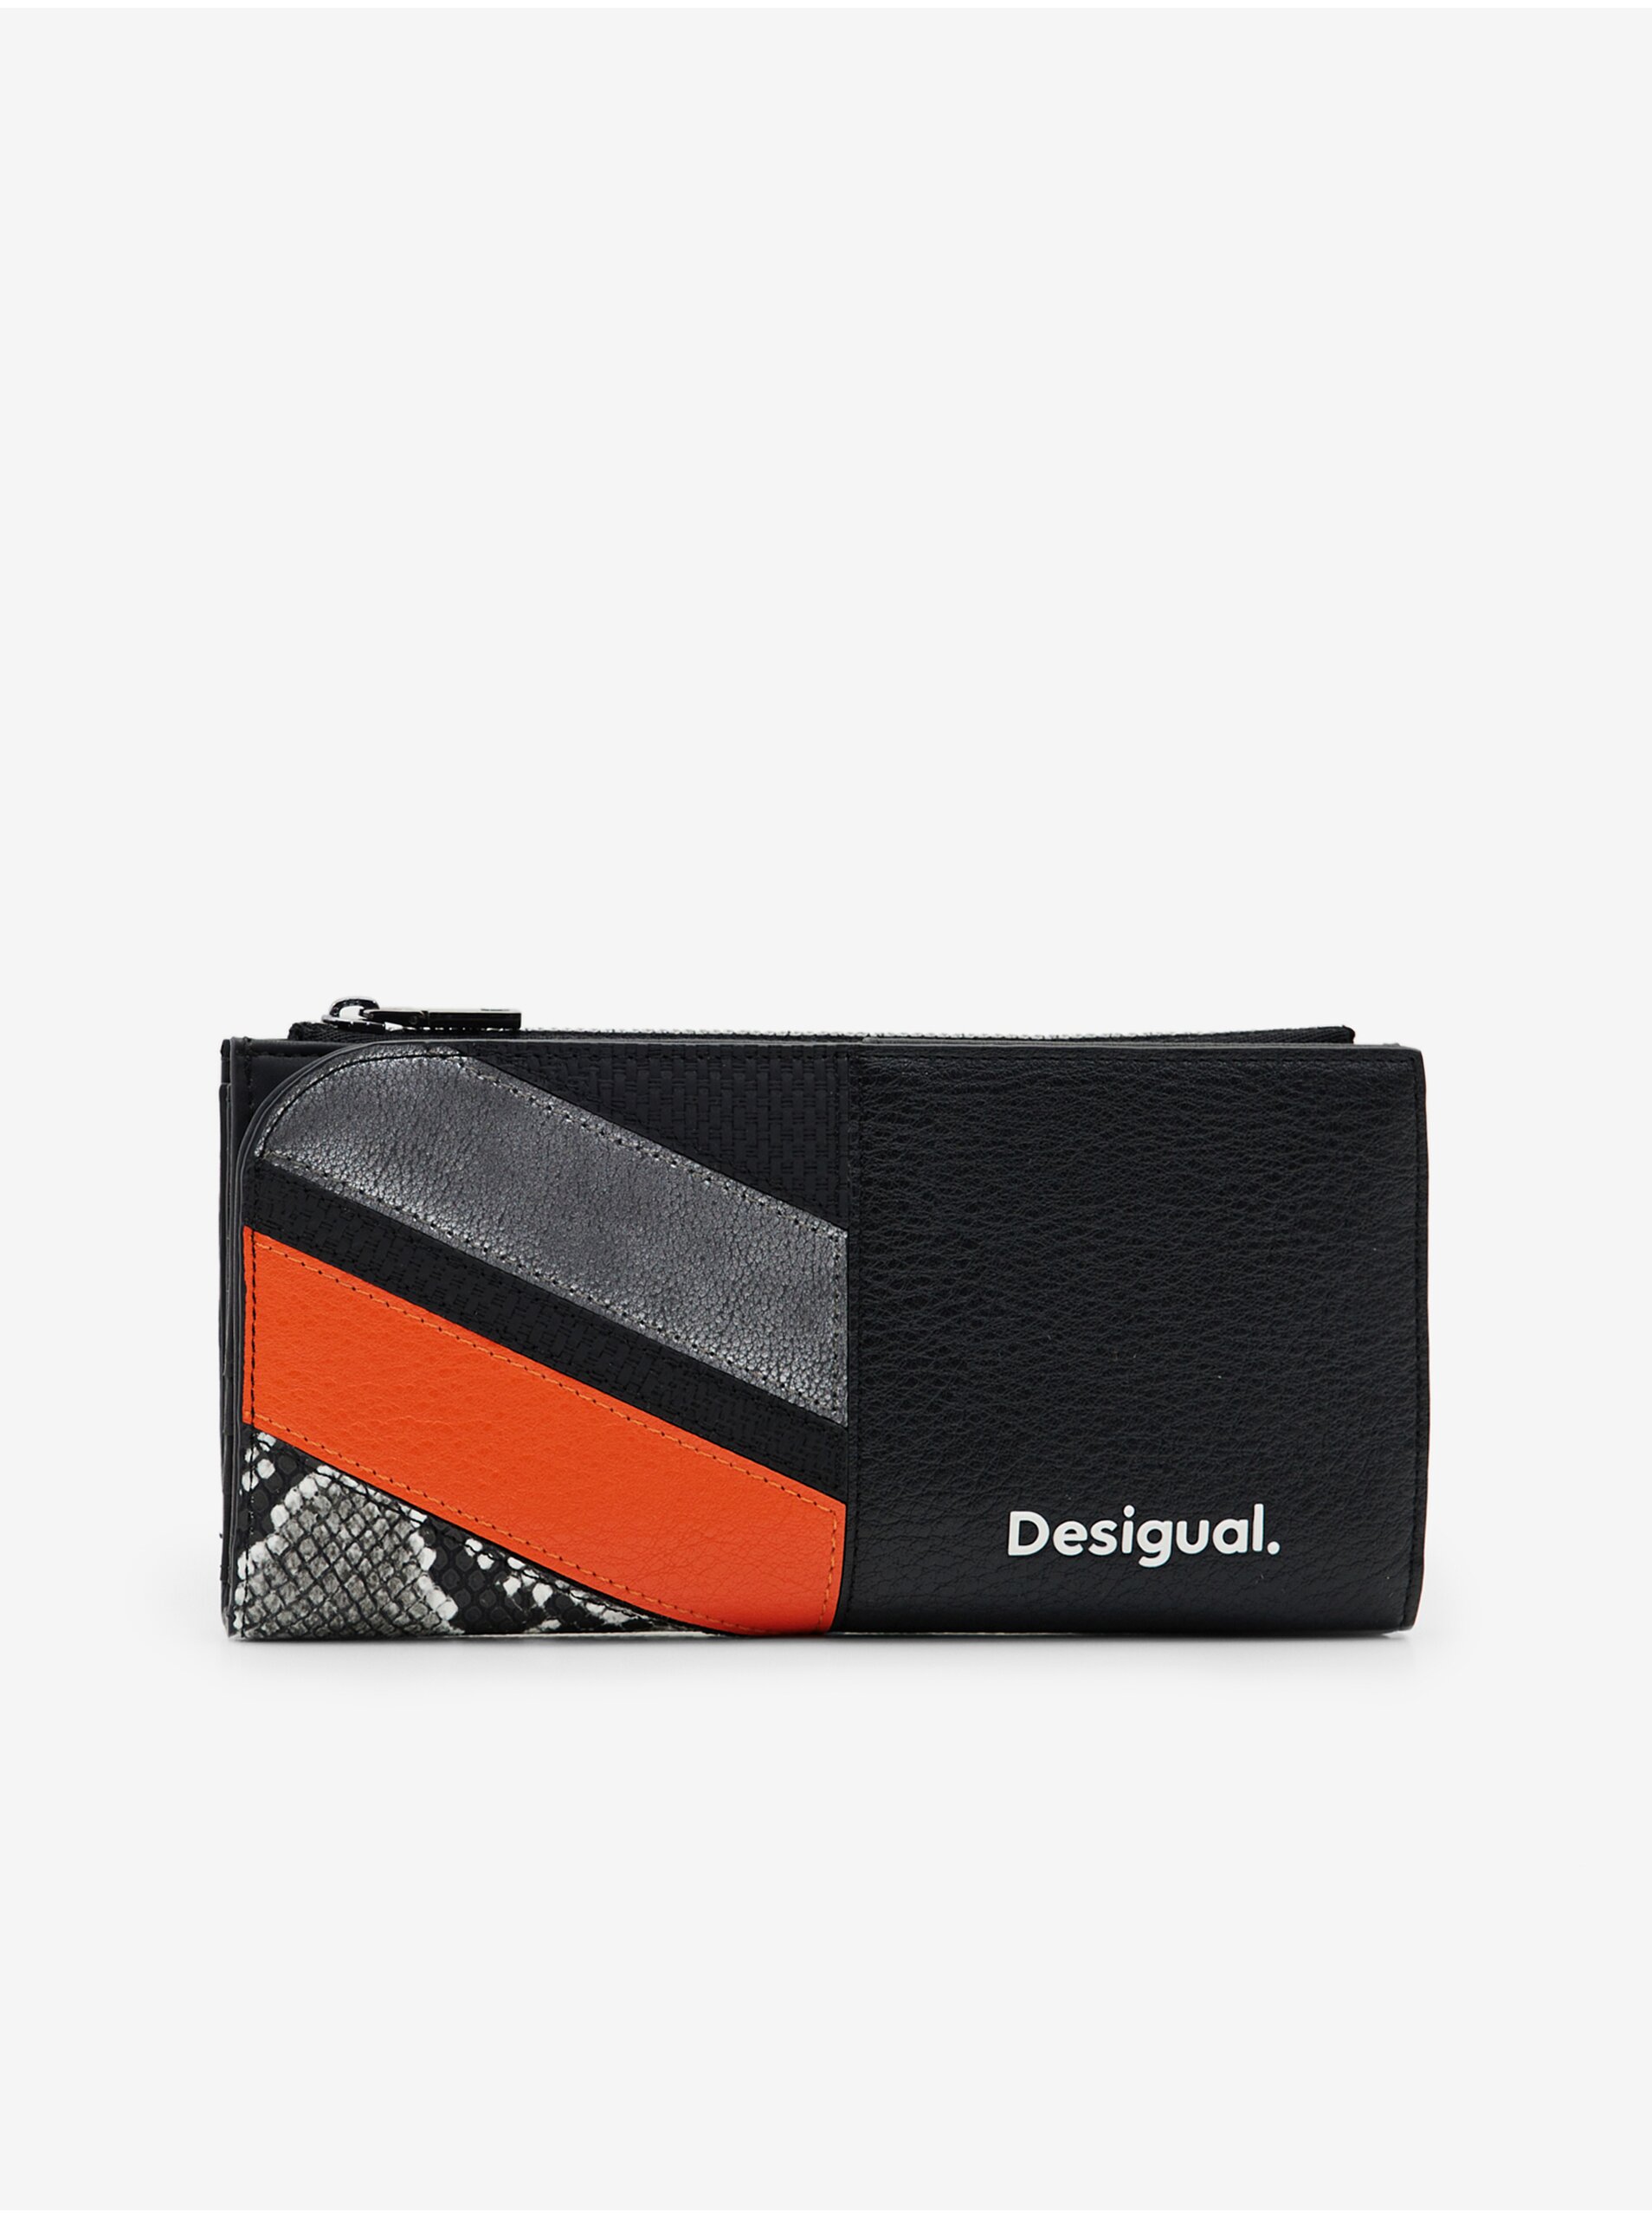 E-shop Peňaženky pre ženy Desigual - čierna, oranžová